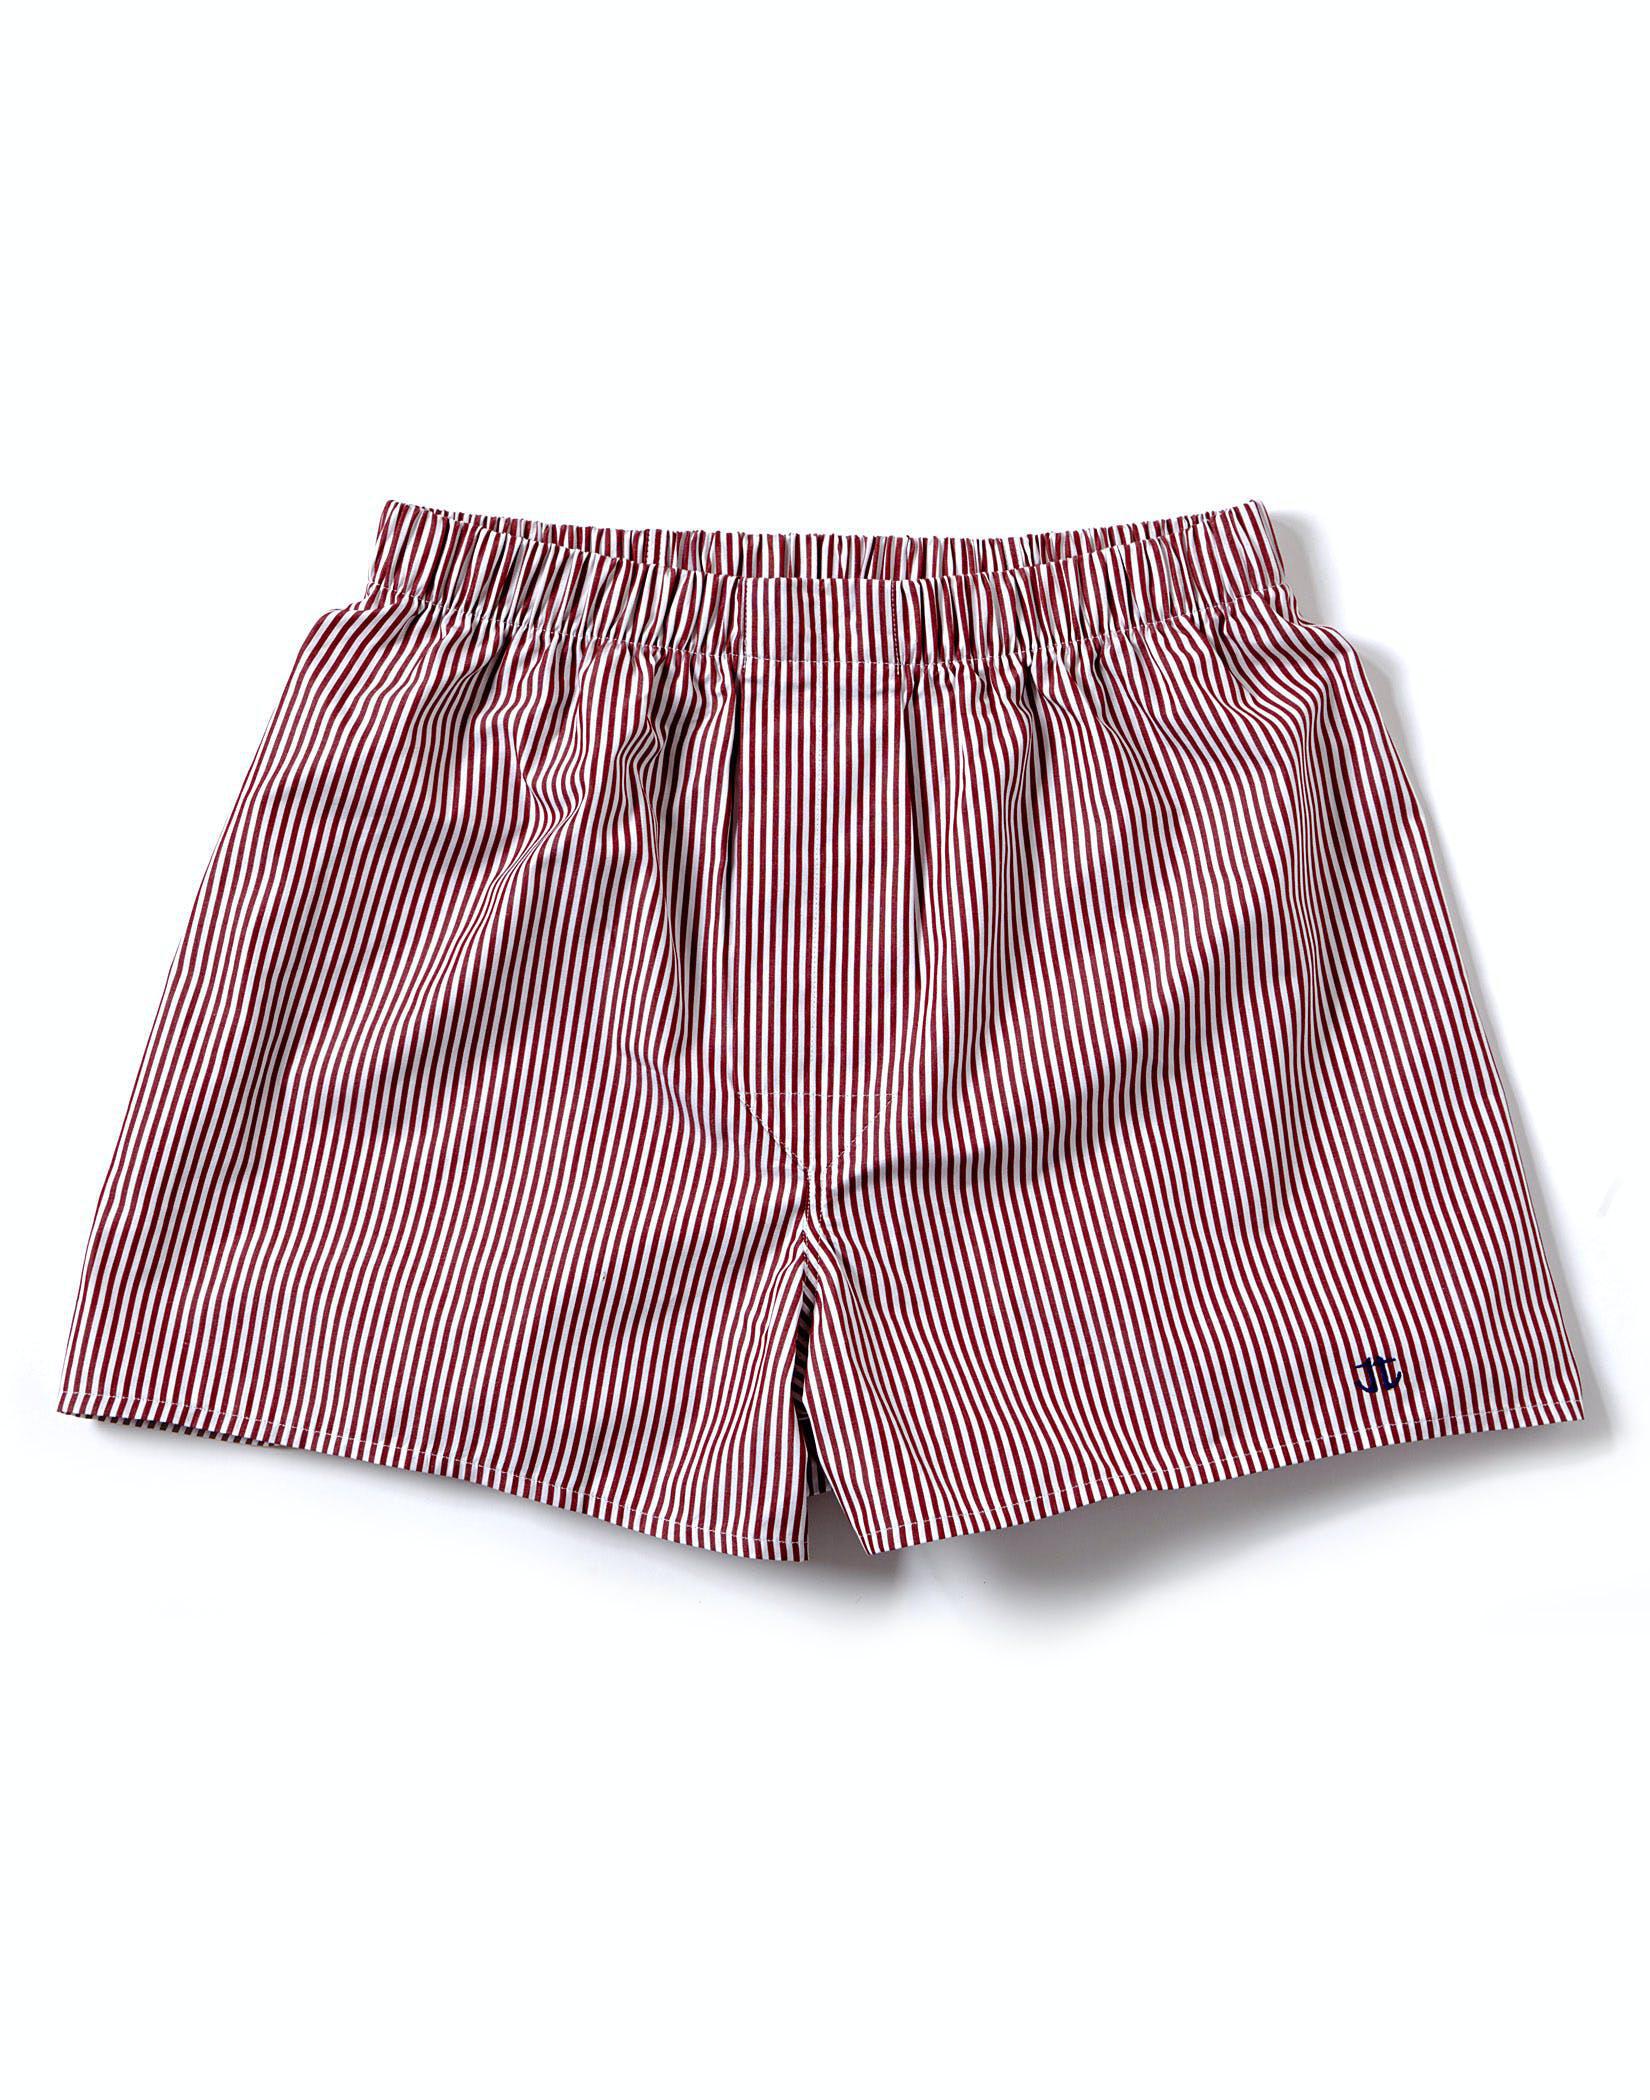 Boxer Shorts - Burgundy Bengal Stripe